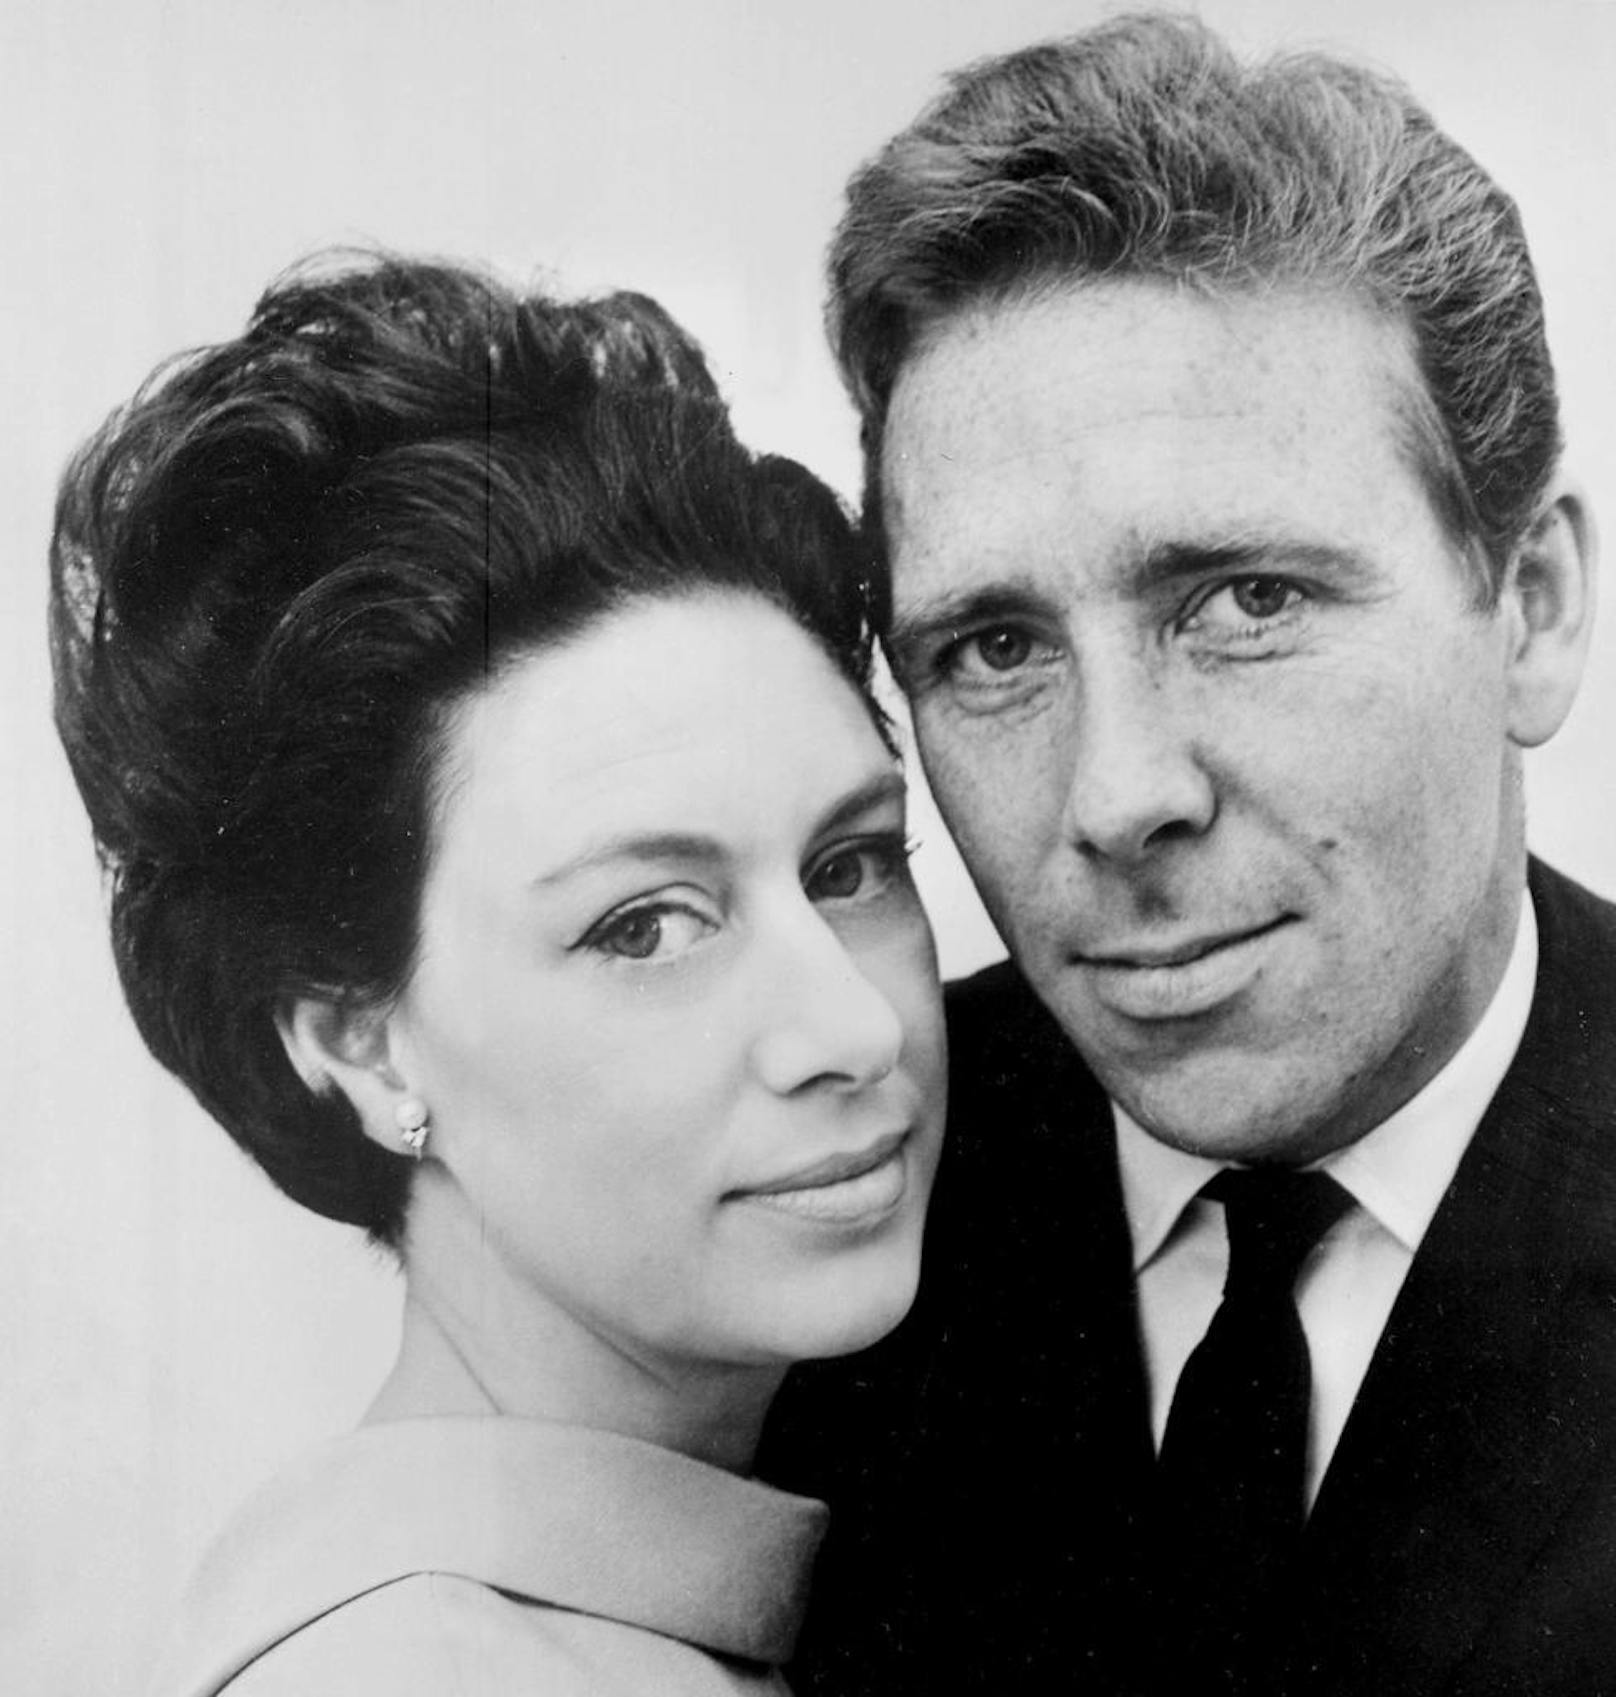 Die "echte" Prinzessin Margaret mit ihrem Mann Anthony Armstrong-Jones, dem Earl of Snowdon 1965

Armstrong-Jones wird ebenfalls neue besetzt ...